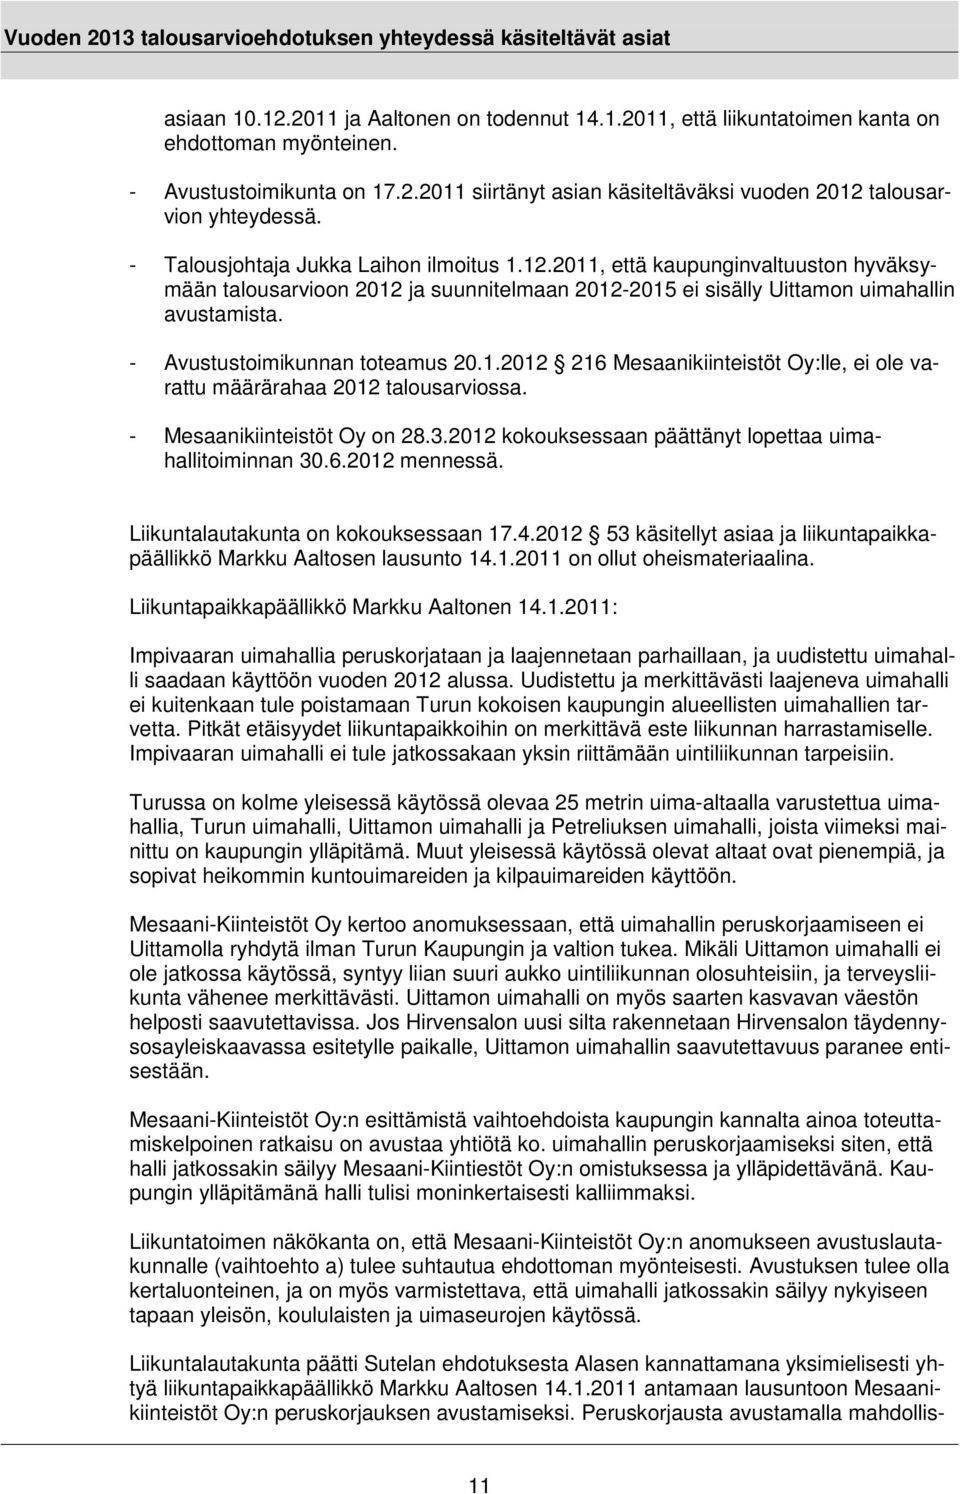 - Avustustoimikunnan toteamus 20.1.2012 216 Mesaanikiinteistöt Oy:lle, ei ole varattu määrärahaa 2012 talousarviossa. - Mesaanikiinteistöt Oy on 28.3.